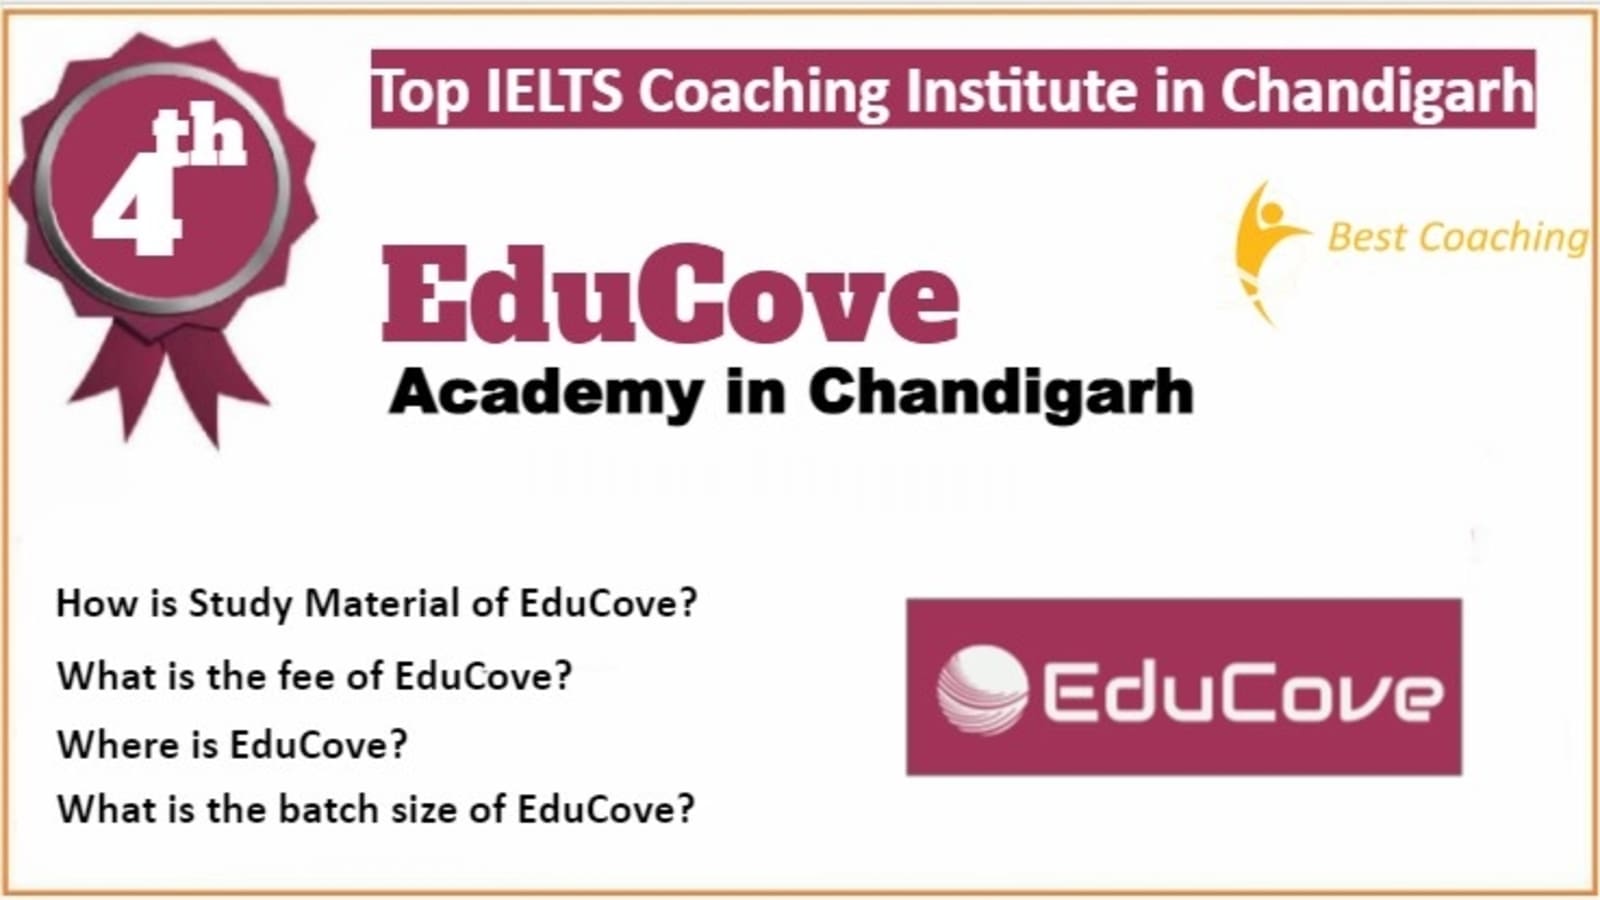 Rank 4 Best IELTS Coaching in Chandigarh